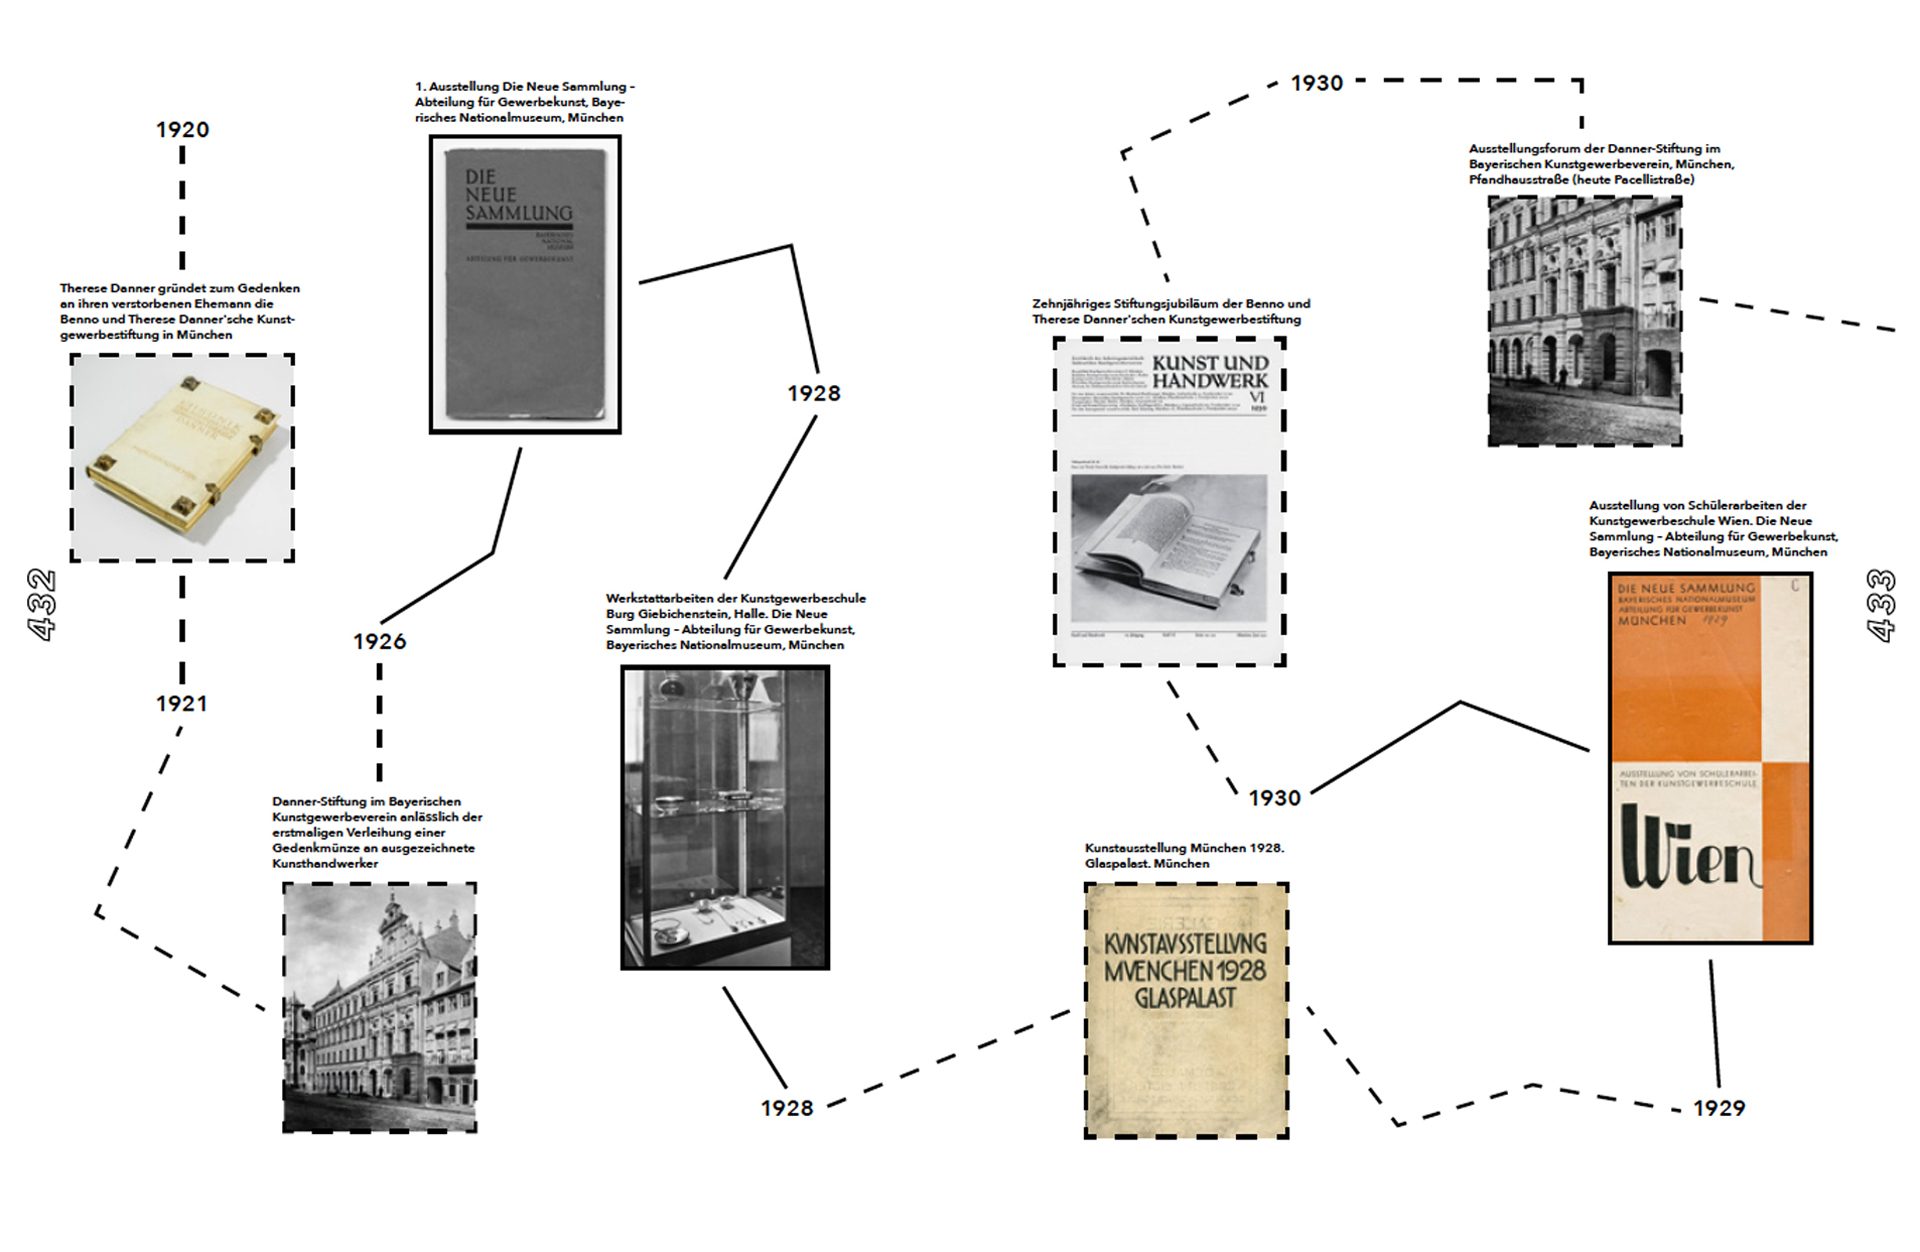 Seite aus Katalog zeigt Zeitstrahl mit Bildern und Infos. 1920 - 1930.